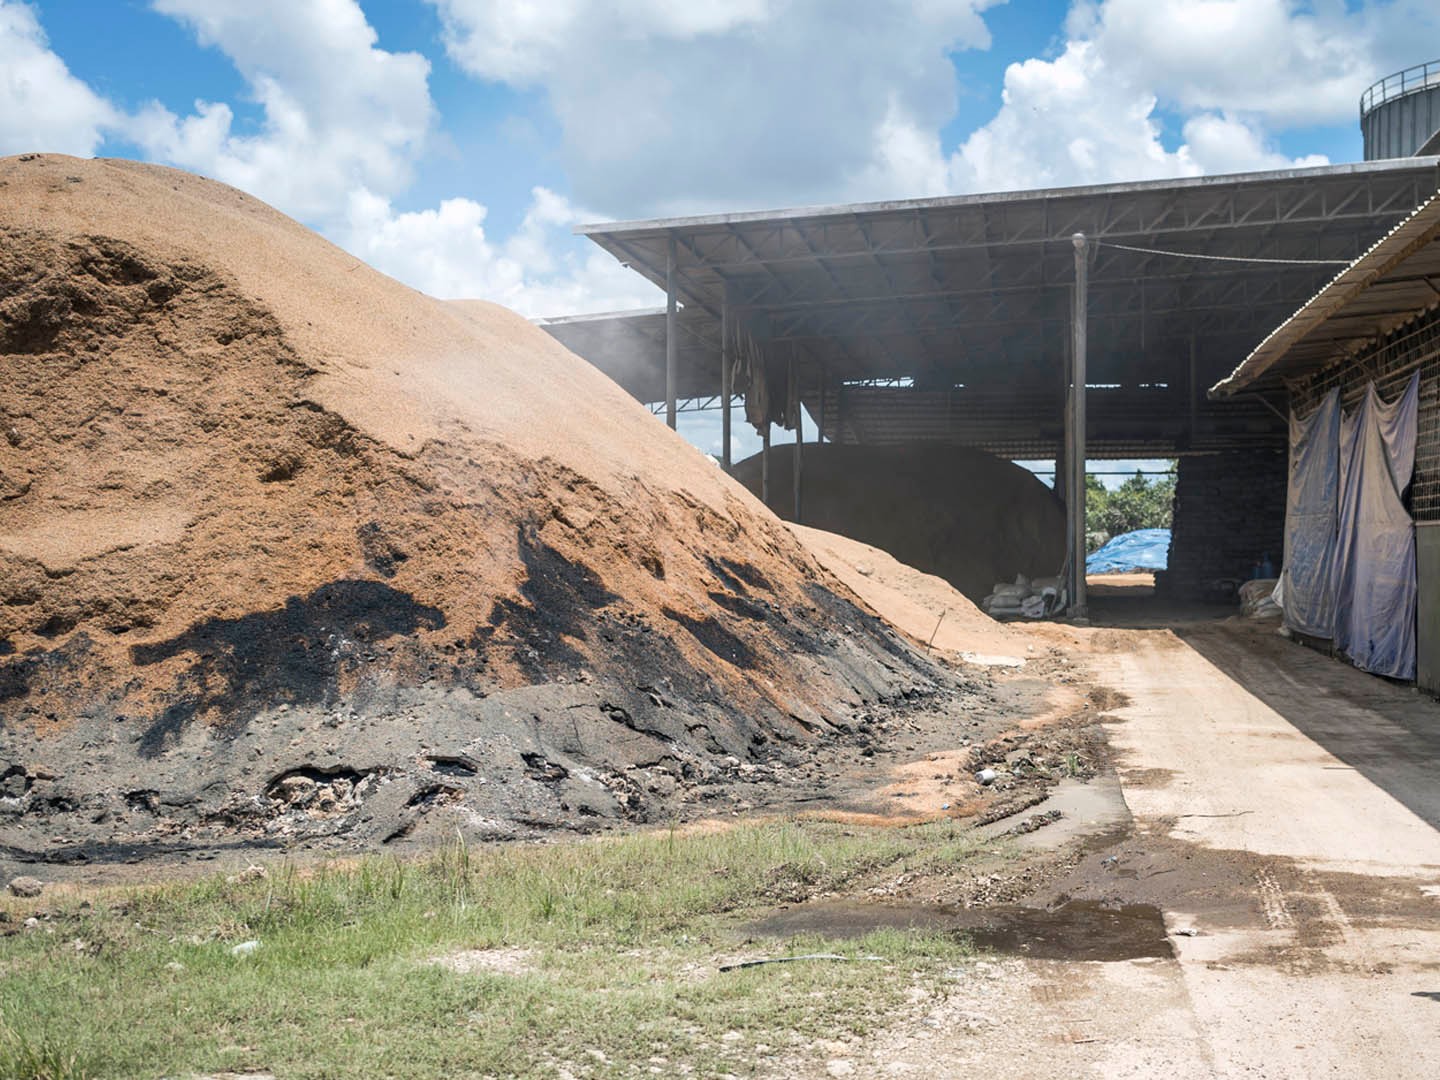 Blick in eine Reismühle in Indonesien: Reisschalen als wertvoller Energielieferant.